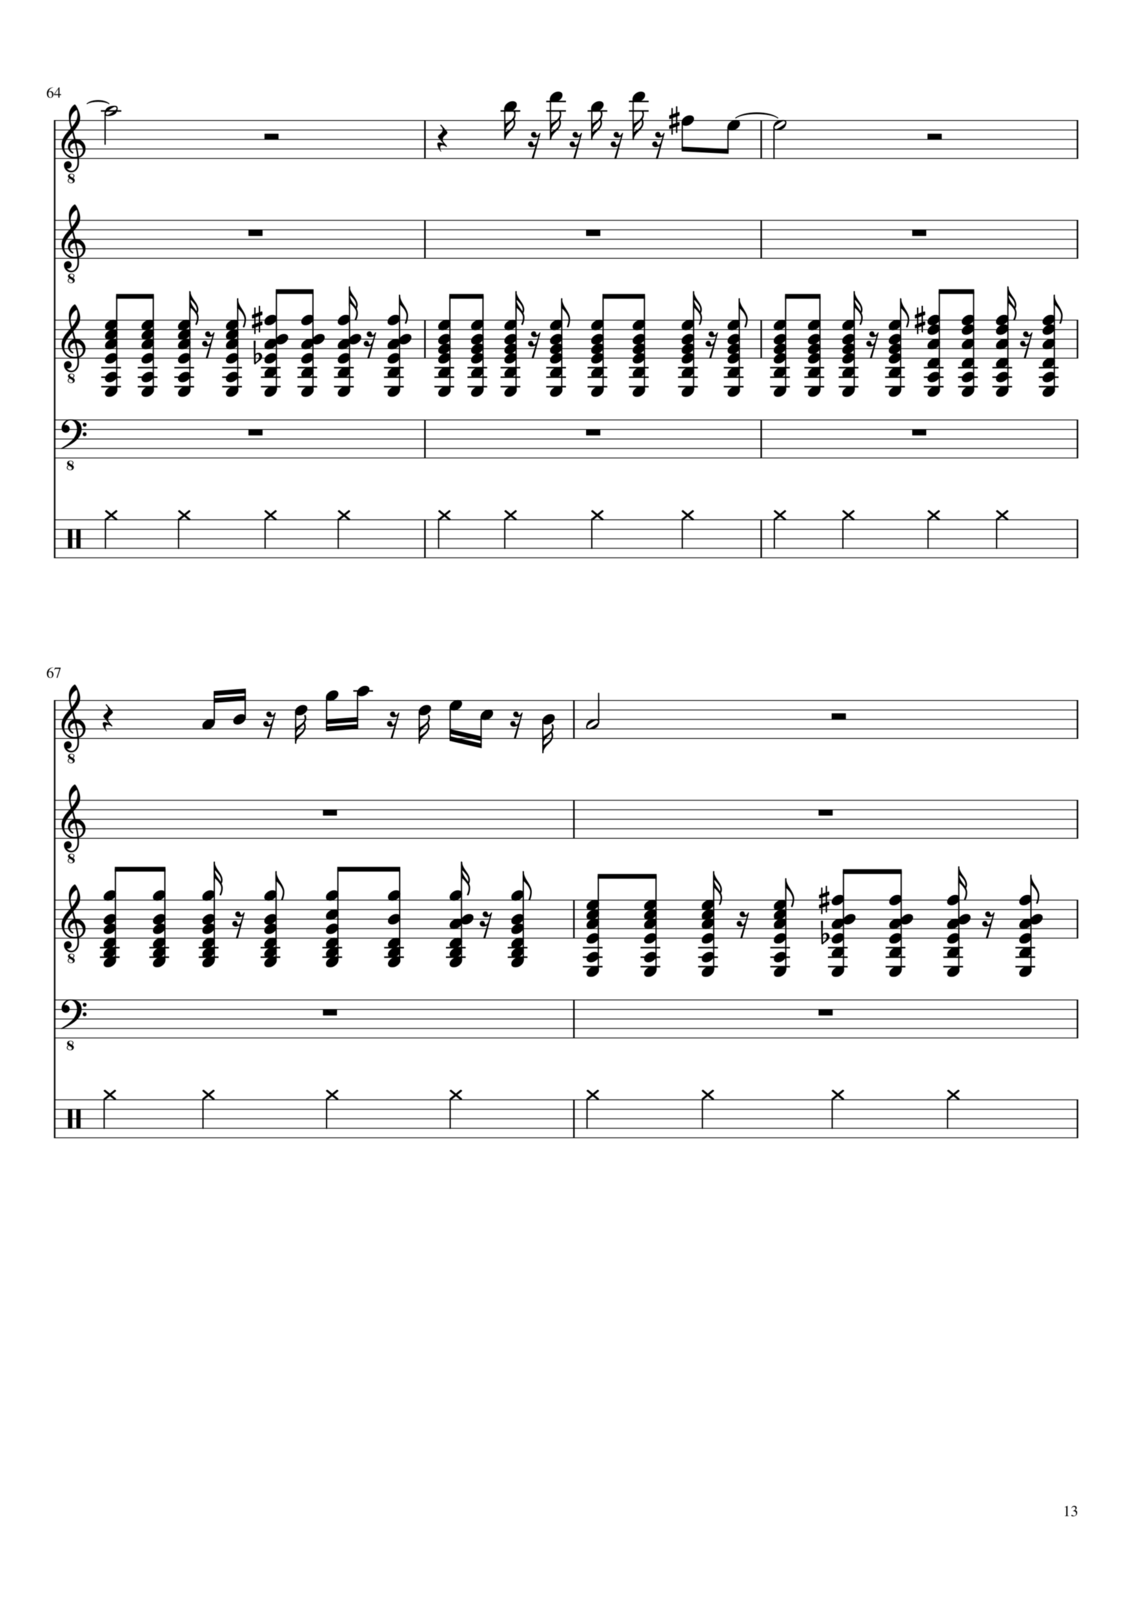 Vechnaya molodost slide, Image 13